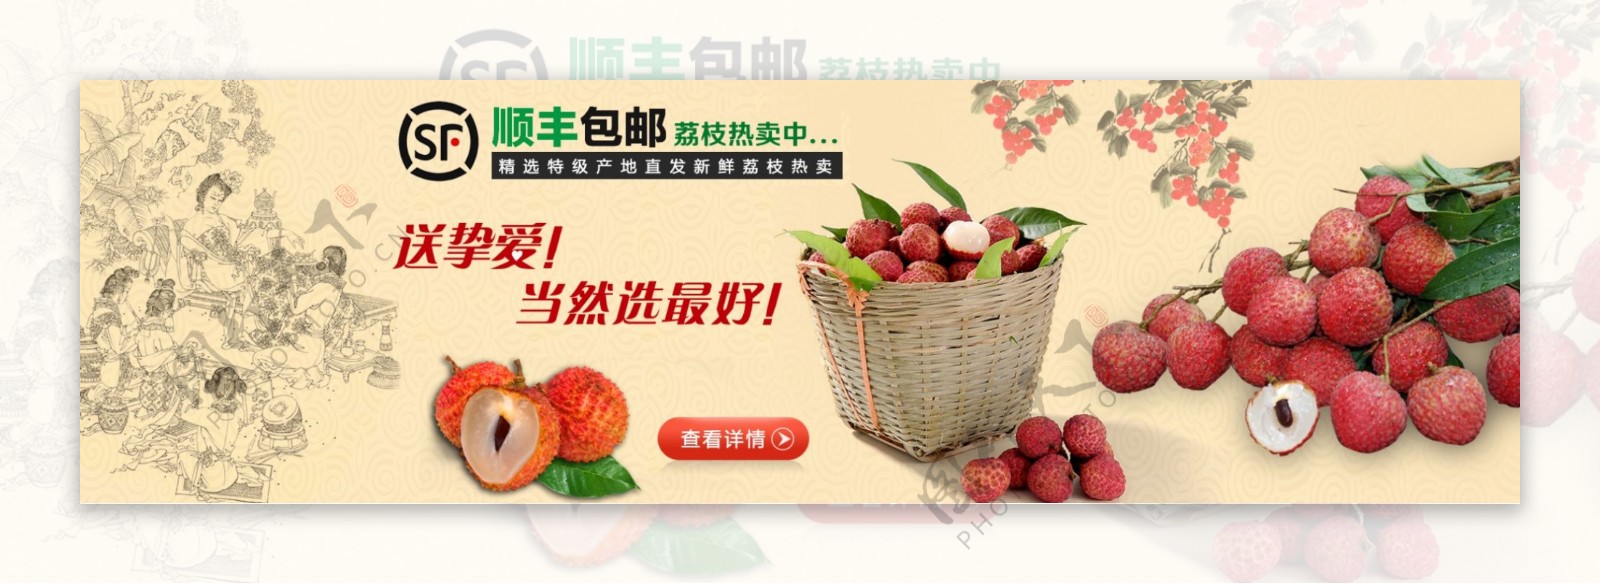 淘宝天猫首页水果食品荔枝专题创意设计海报